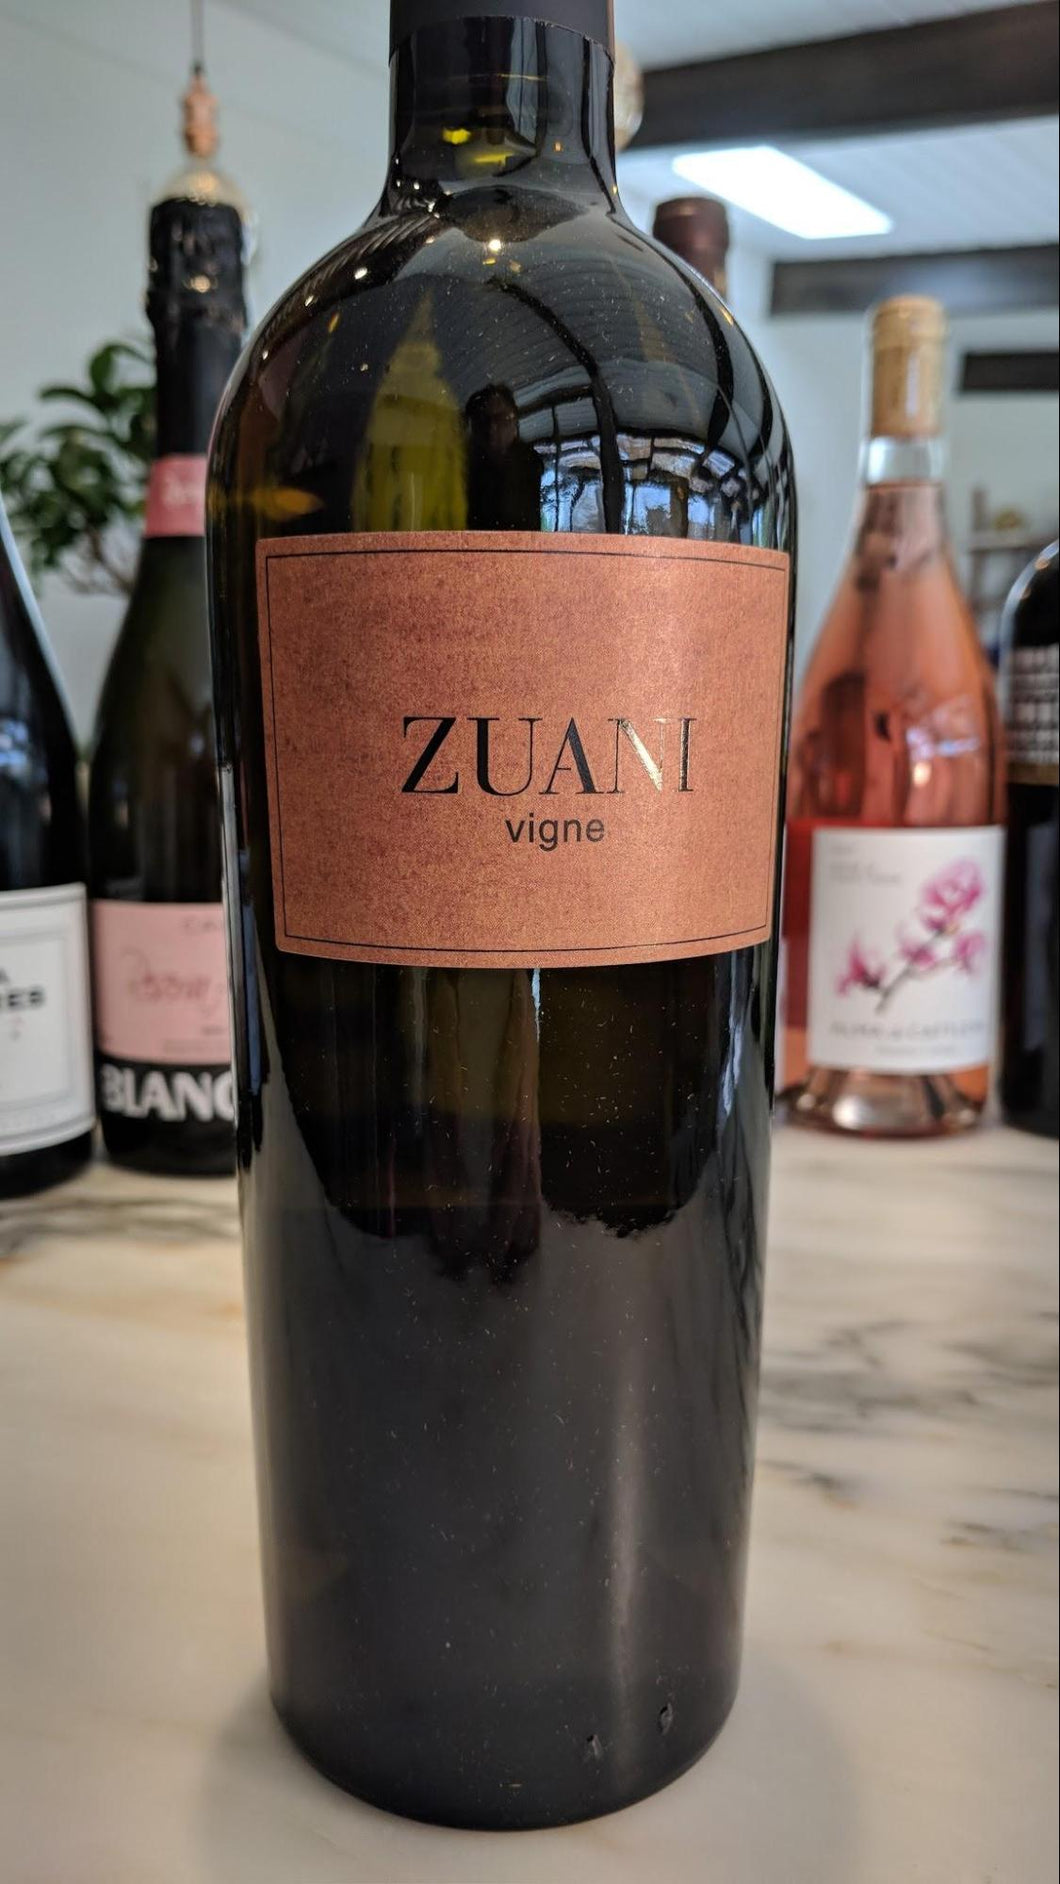 Zuani - 2015 Vigne Collio Bianco (Friulano, Chardonnay, Pinot Grigio and Sauvignon Blanc) - Venezia-Giulia, Italy